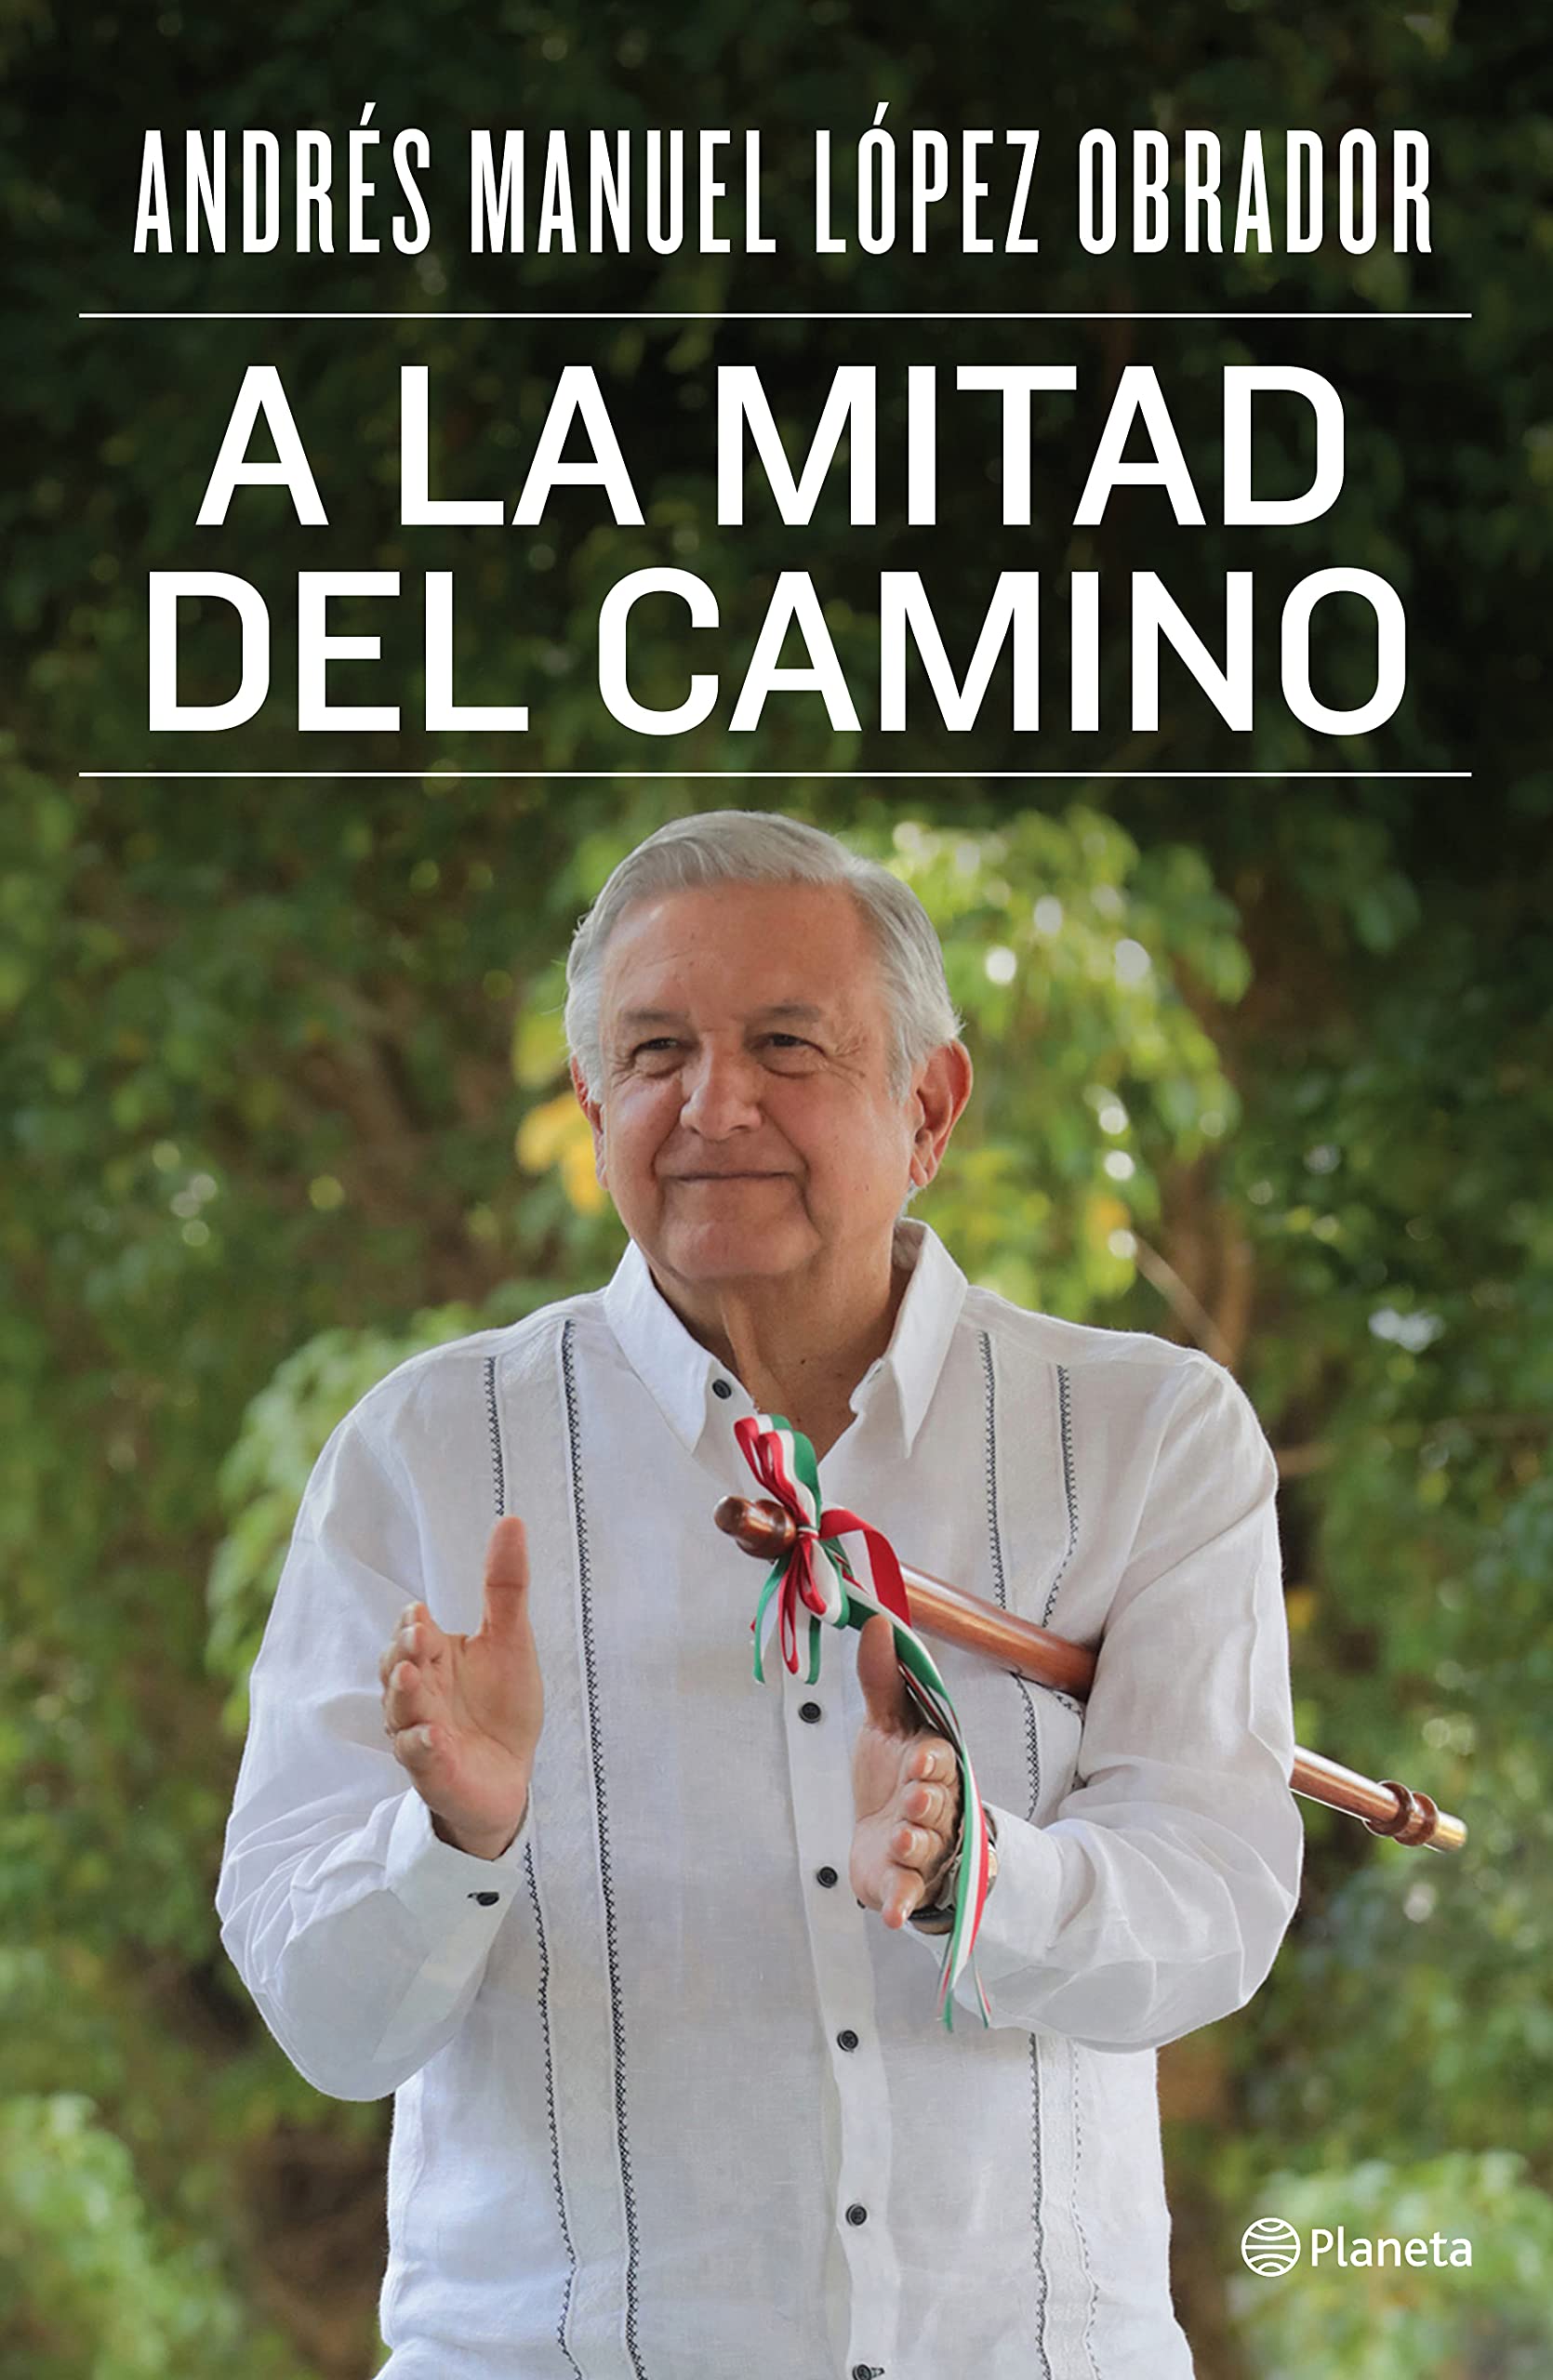 Andrés Manuel López Obrador. (2021). A la mitad del camino, México: Editorial Planeta.